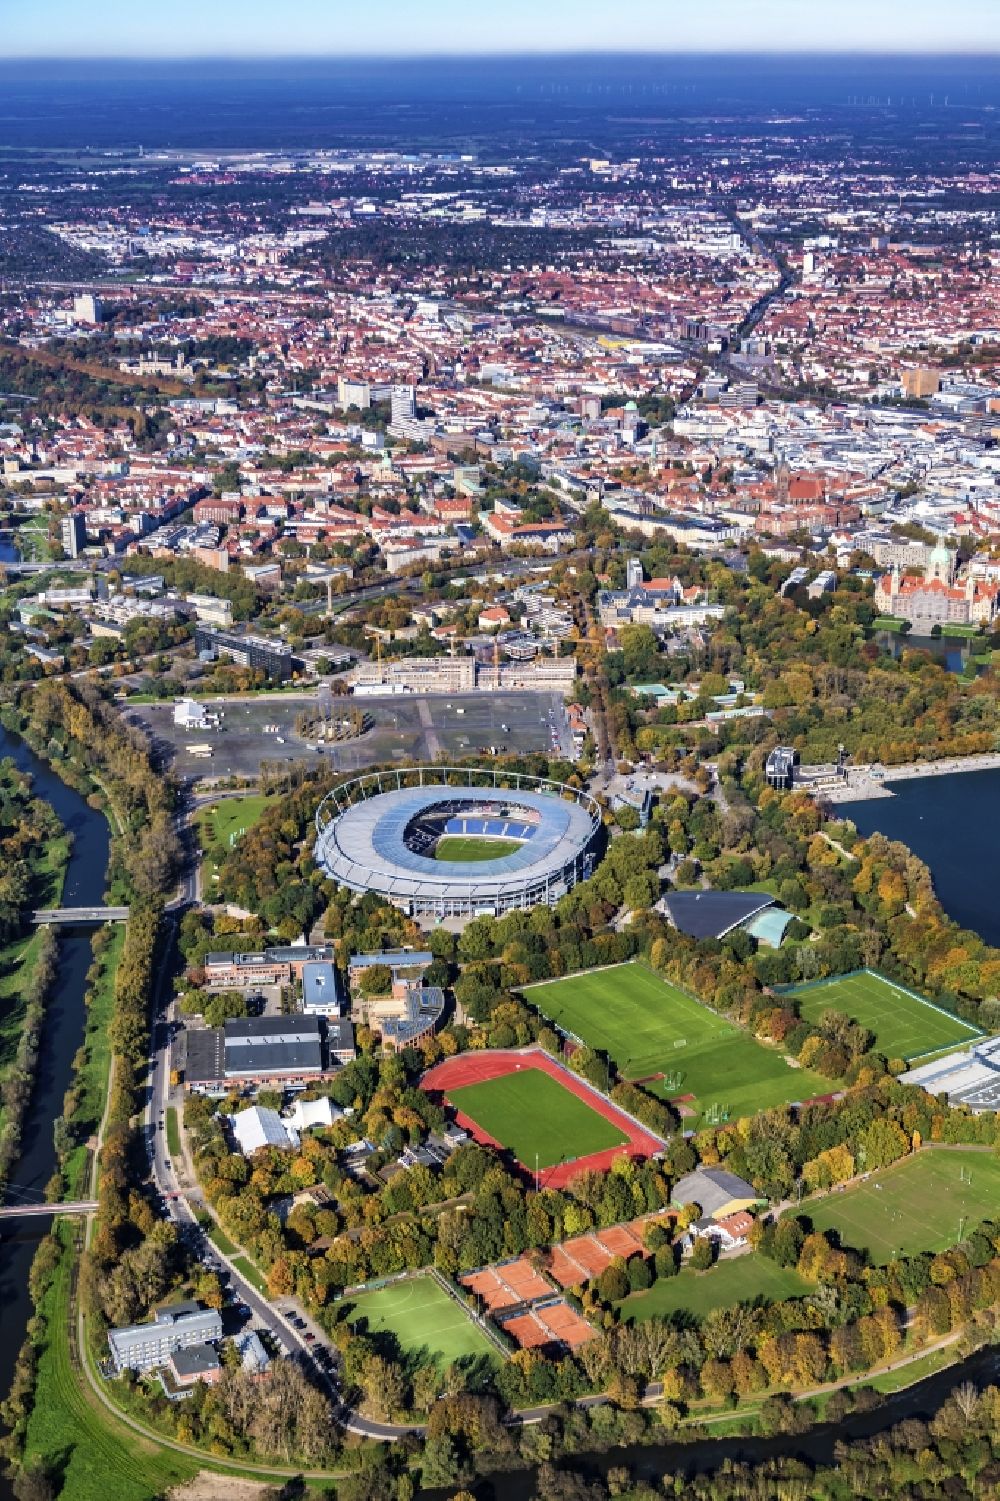 Hannover aus der Vogelperspektive: Stadion der HDI Arena im Stadtteil Calenberger Neustadt von Hannover in Niedersachsen